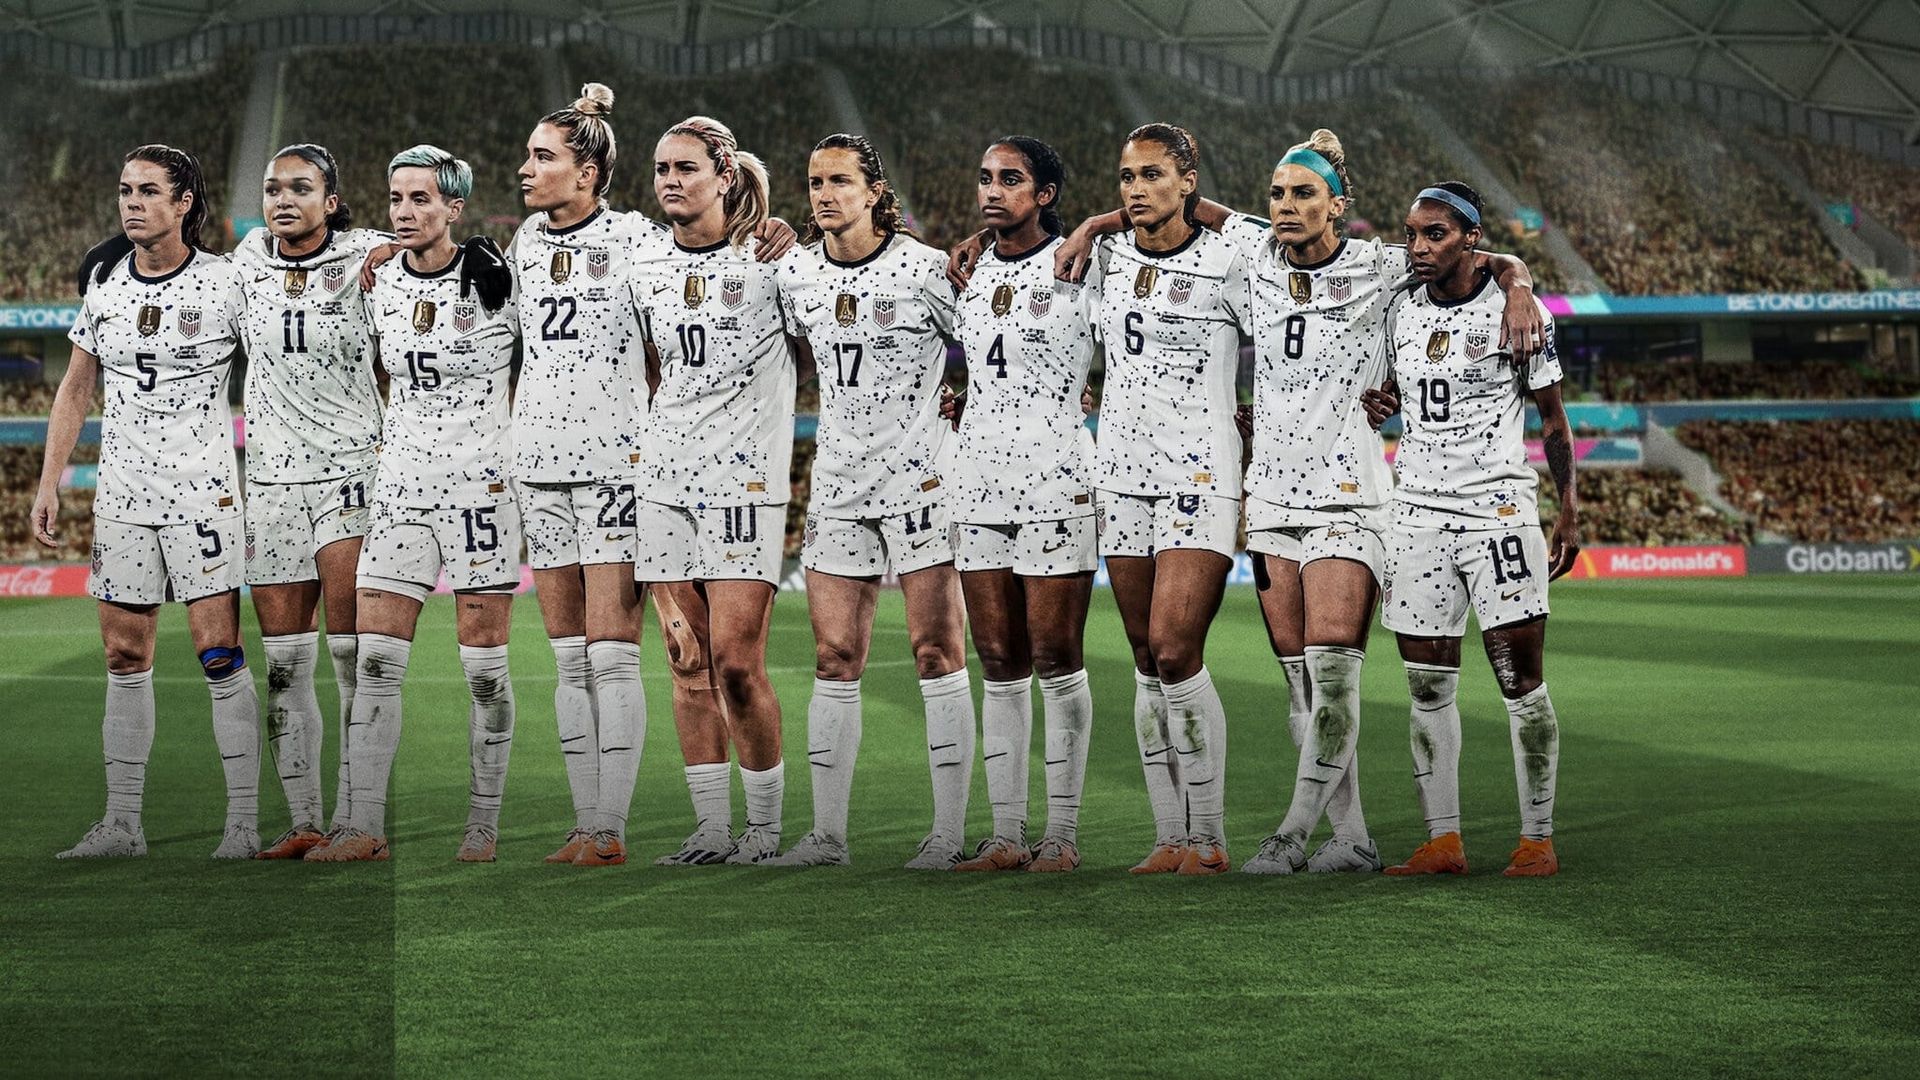 Under Pressure: The U.S. Women's World Cup Team background